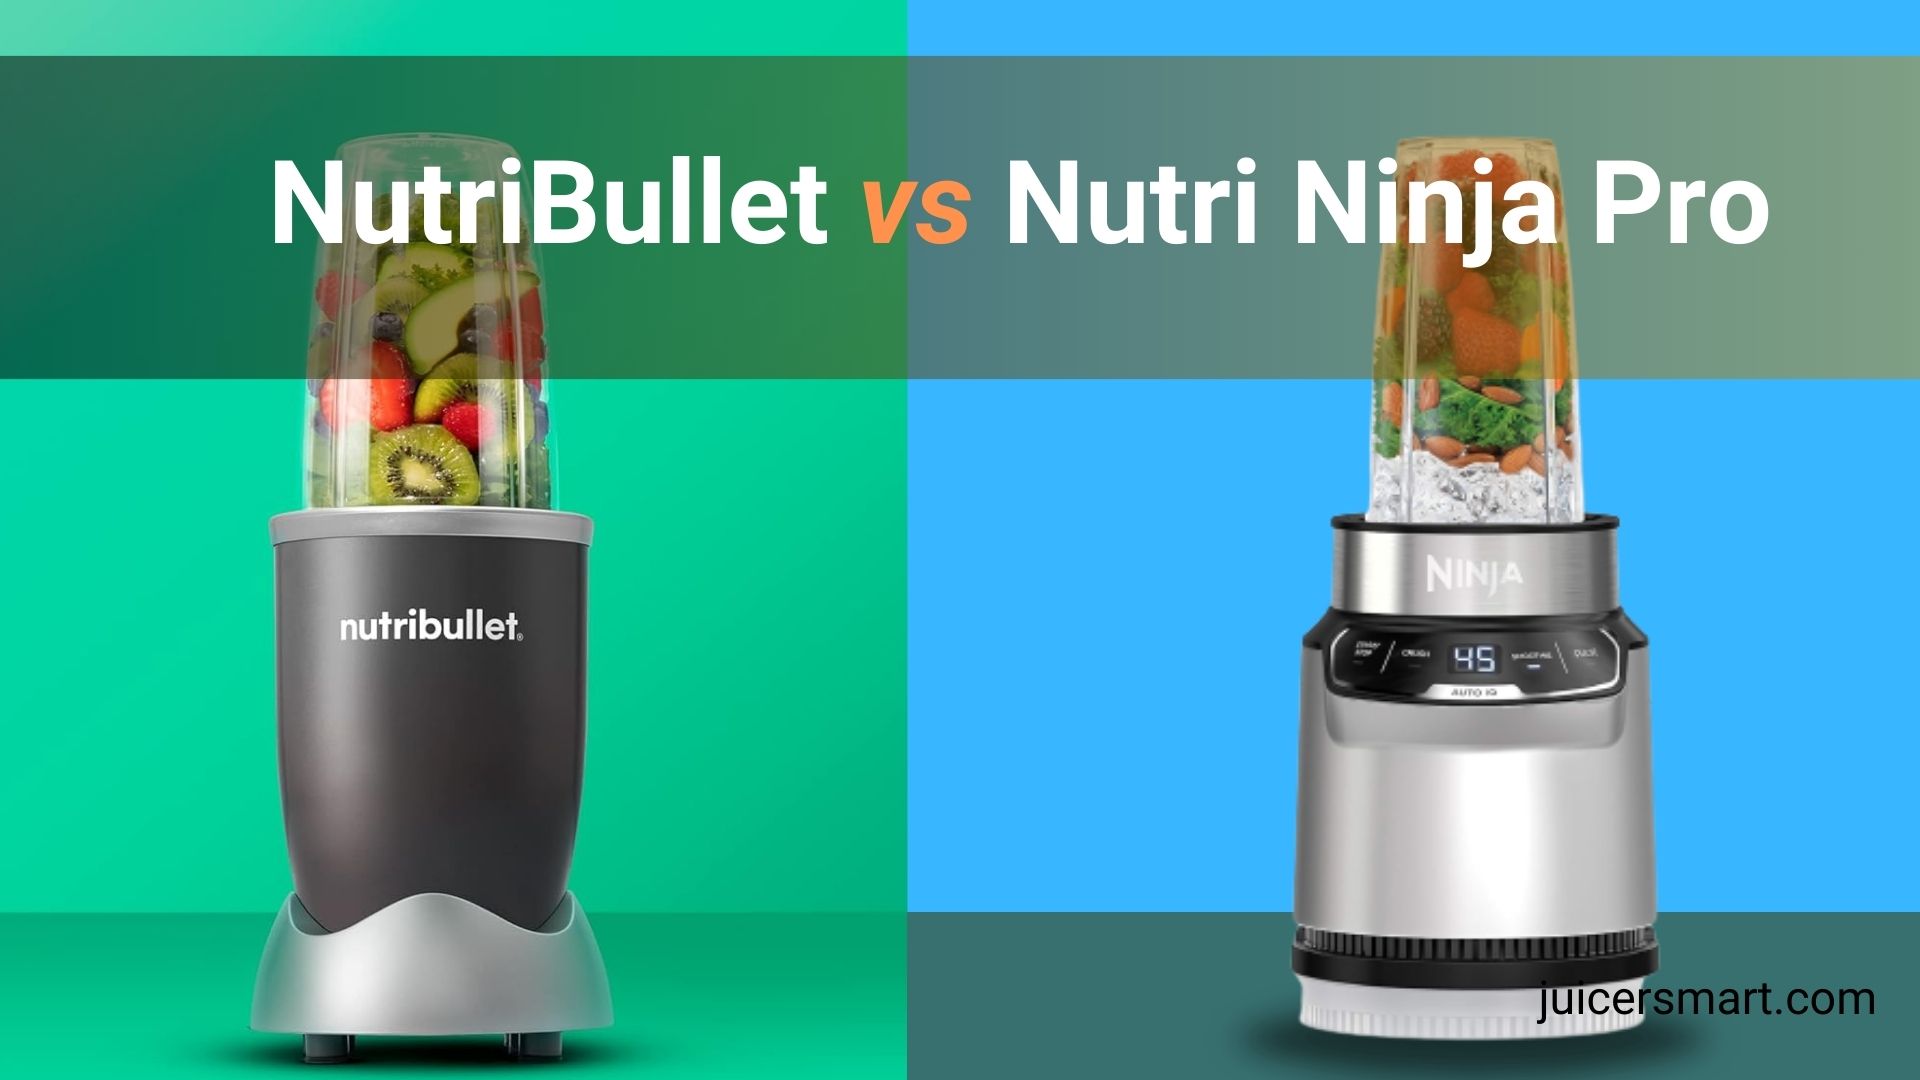 ✓NutriBullet Blender vs Ninja Professional Blender